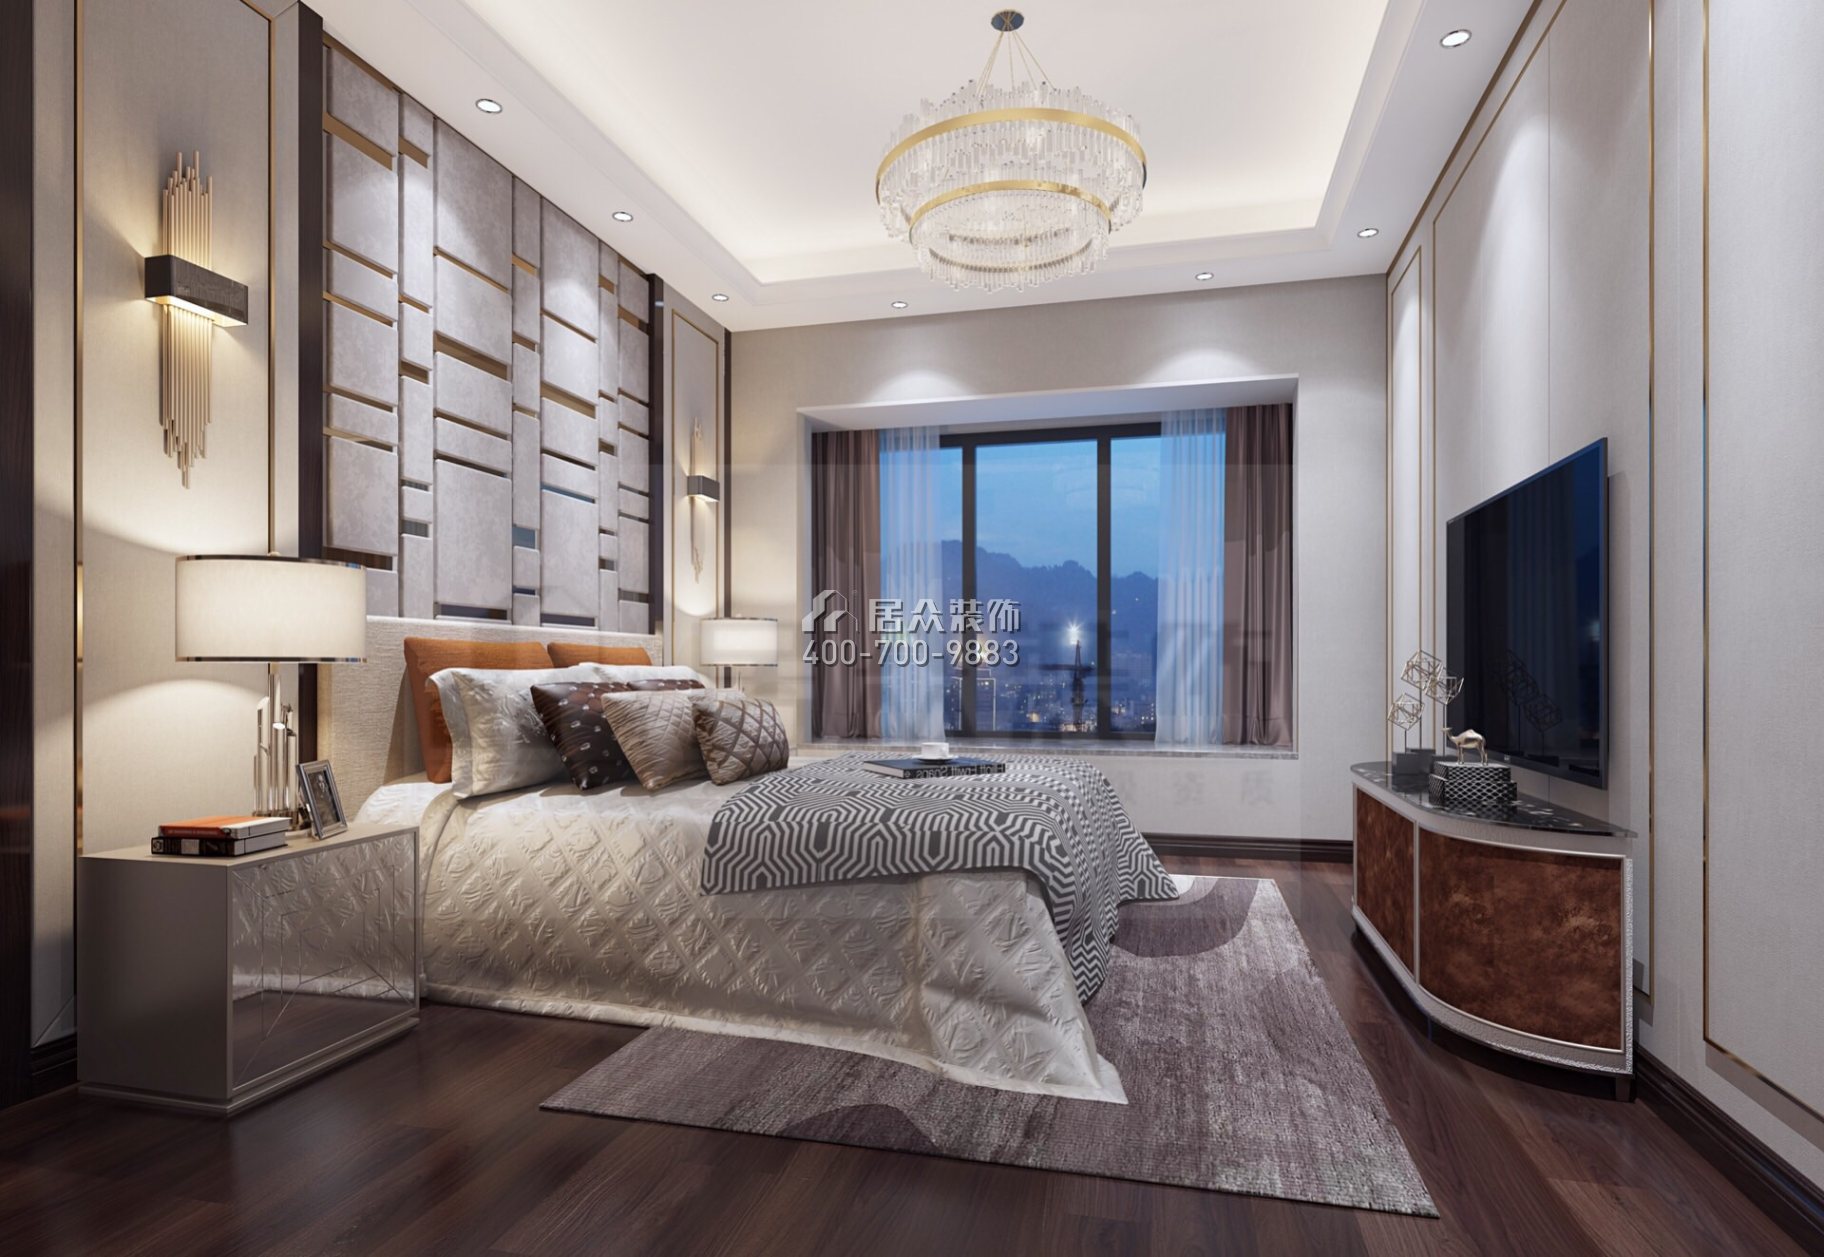 龙光玖龙玺113平方米现代简约风格平层户型卧室装修效果图